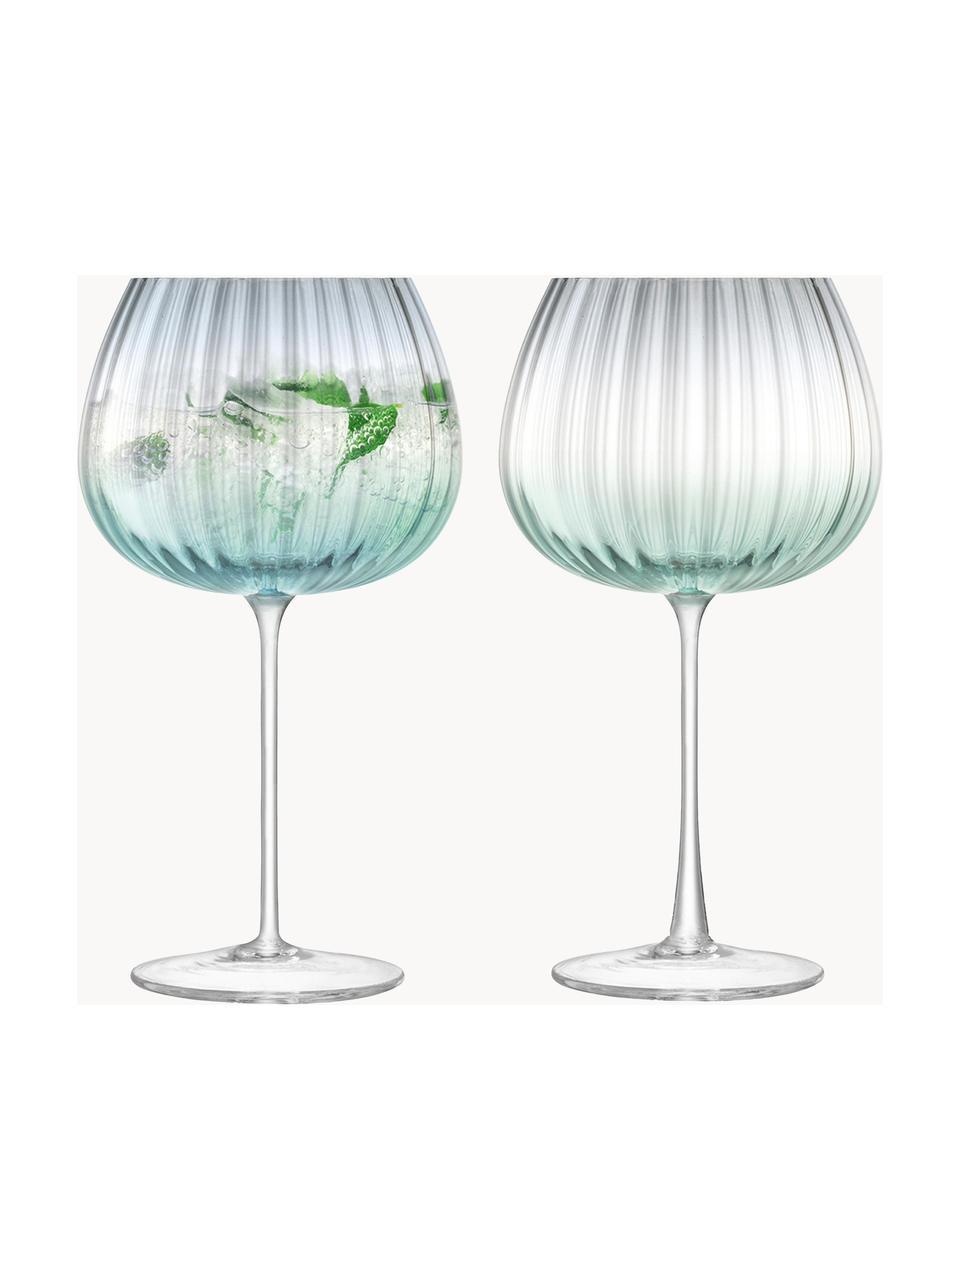 Handgemachte Weingläser Dusk mit Farbverlauf, 2 Stück, Glas, Türkis, Grau, Transparent, Ø 10 x H 20 cm, 650 ml